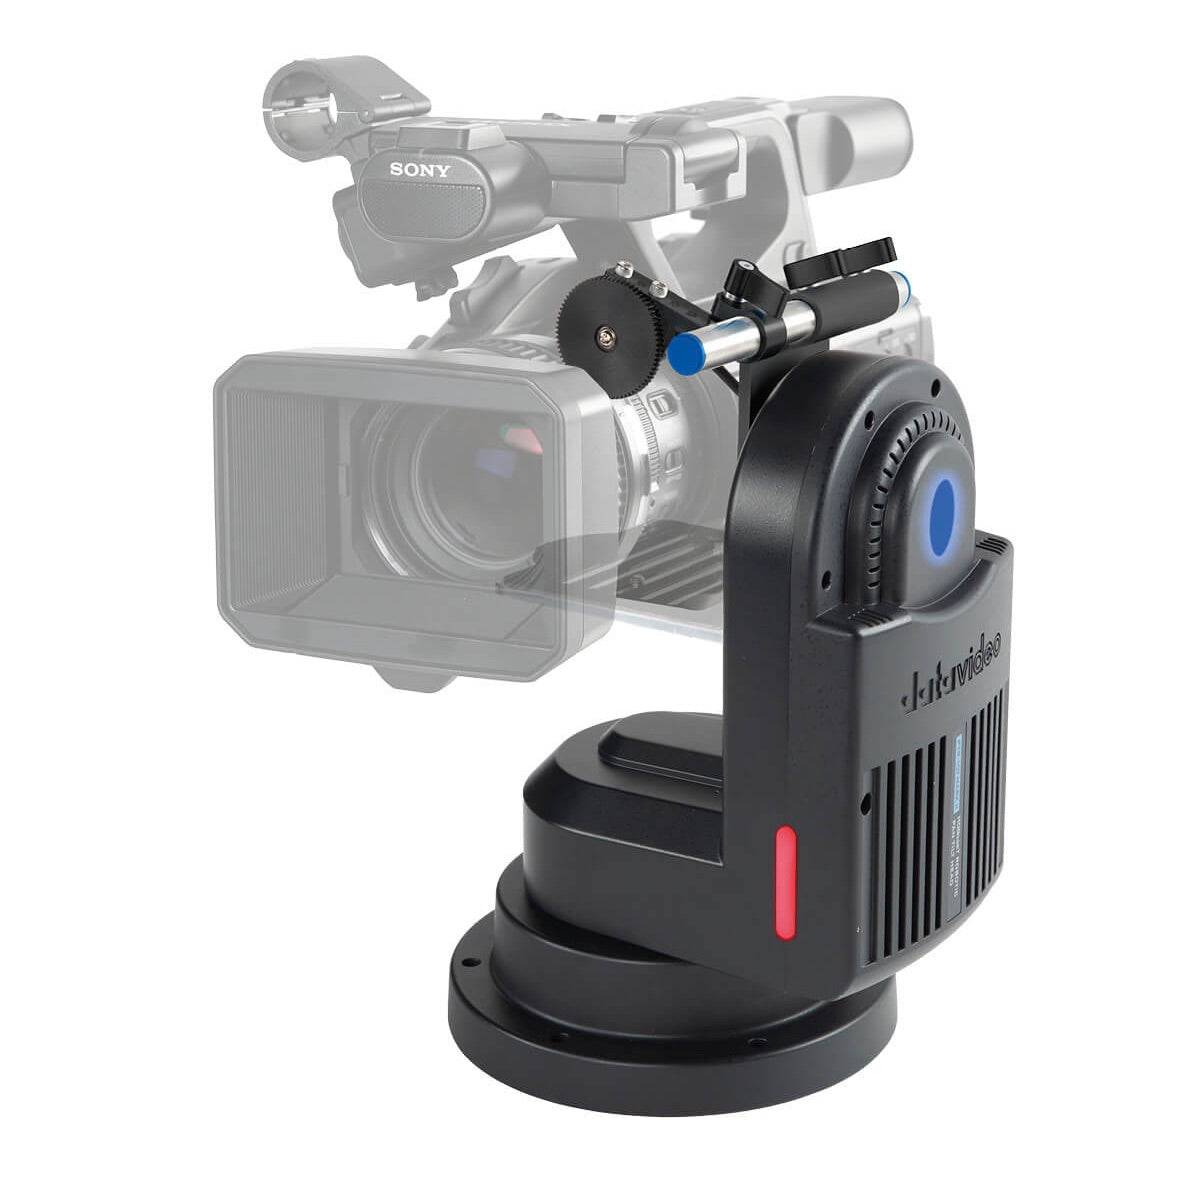 DataVideo PTR-10T Mark II - HDBaseT Robotic Pan Tilt Head, shown with optional DataVideo ZEK-1 Zoom Encoder Kit